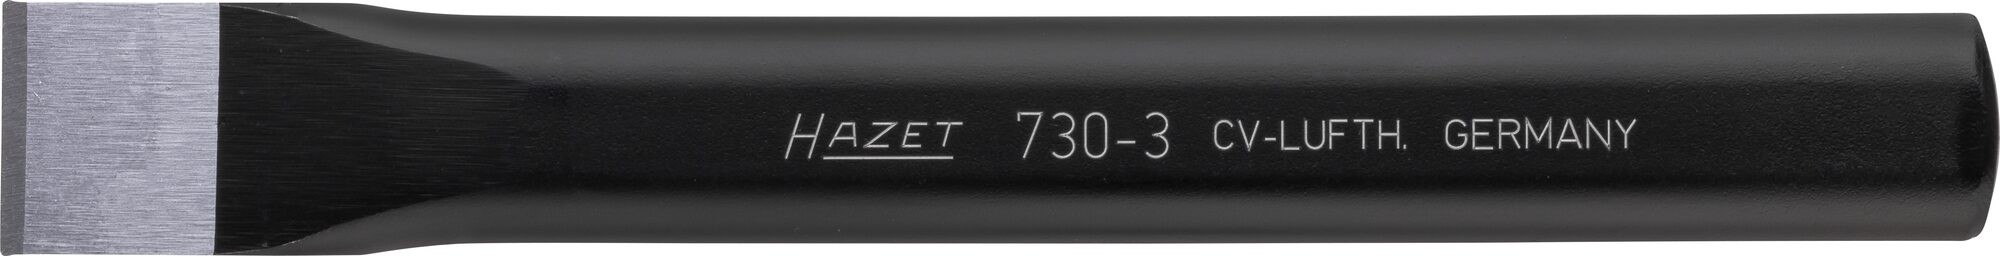 HAZET Flachmeißel 730-3 · 18 mm